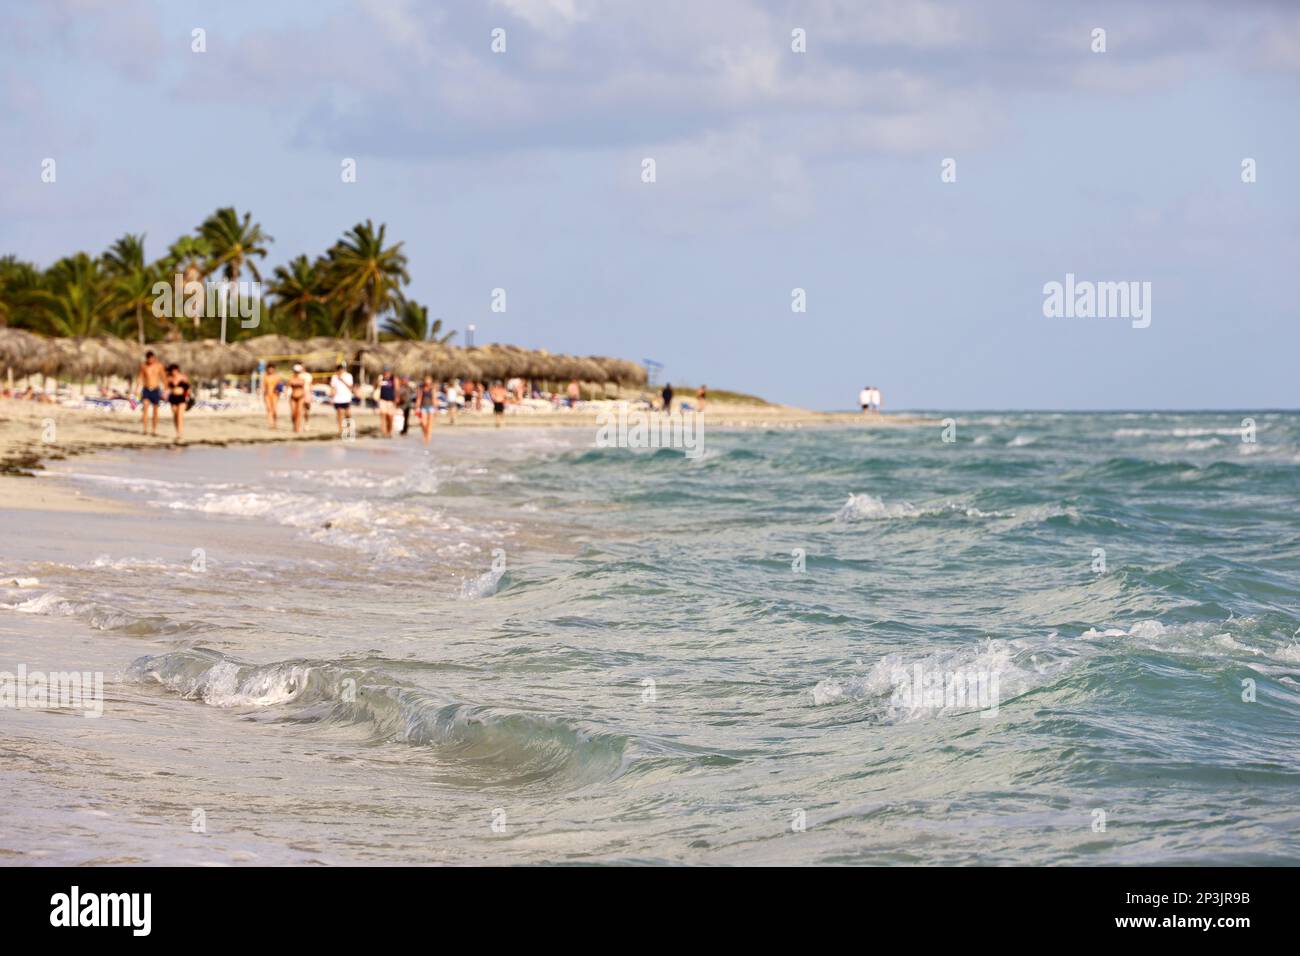 Vue imprenable des vagues de l'océan à la plage tropicale avec les gens, la côte sablonneuse et les palmiers à noix de coco. Station des Caraïbes avec eau transparente Banque D'Images